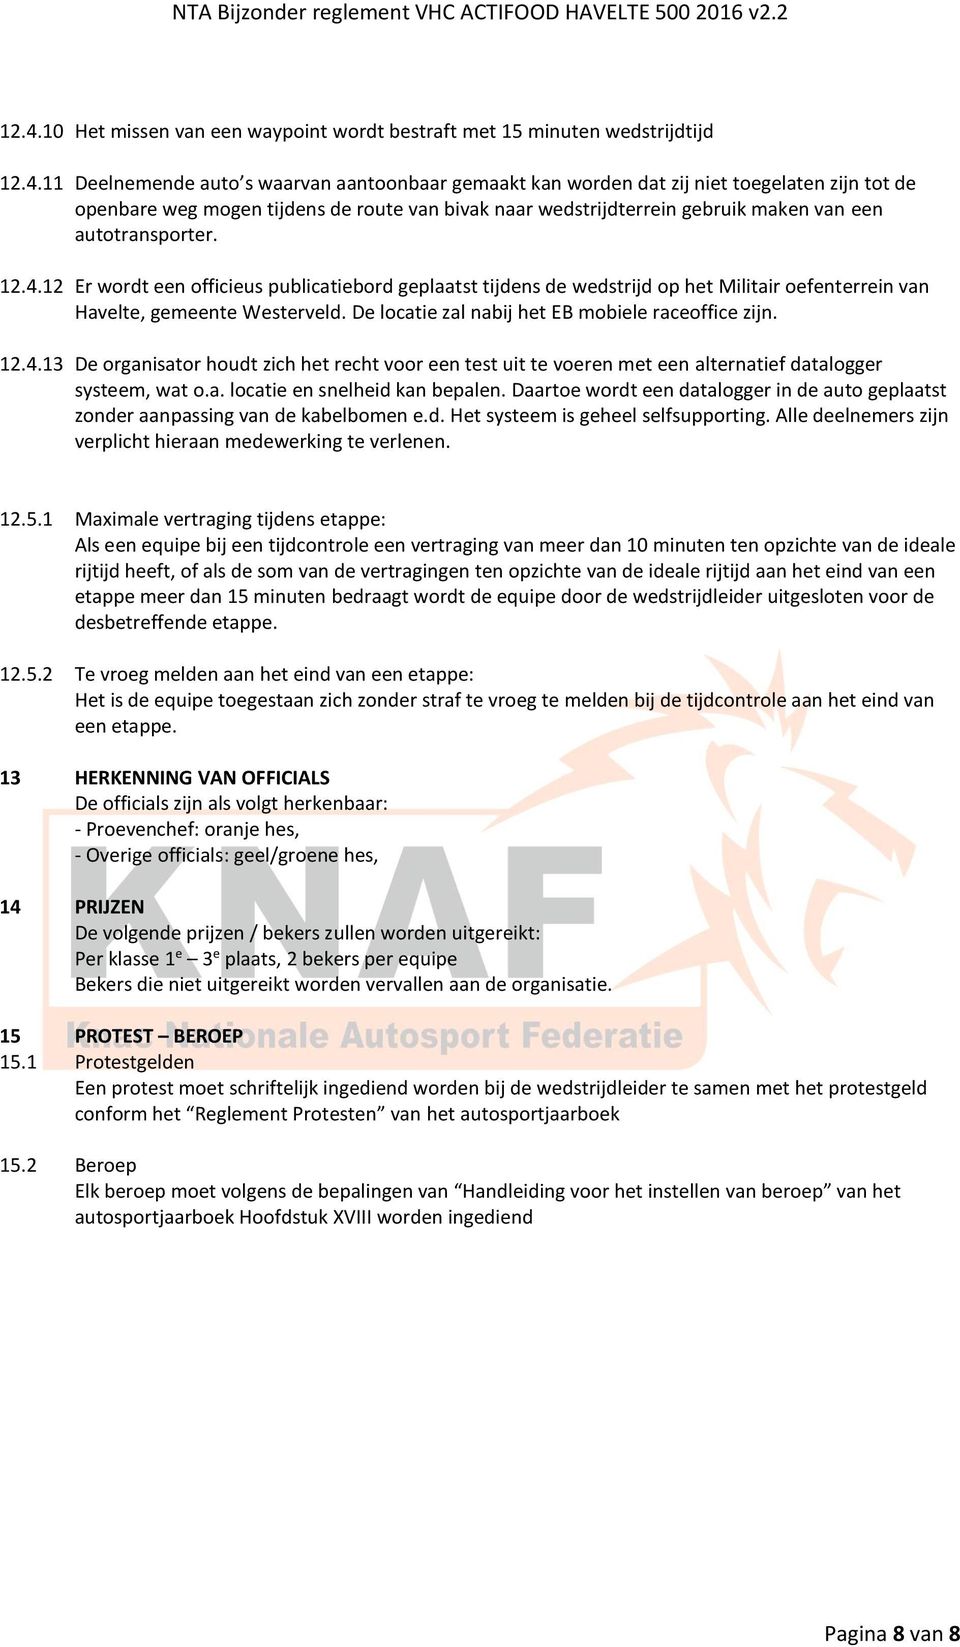 12 Er wordt een officieus publicatiebord geplaatst tijdens de wedstrijd op het Militair oefenterrein van Havelte, gemeente Westerveld. De locatie zal nabij het EB mobiele raceoffice zijn. 12.4.